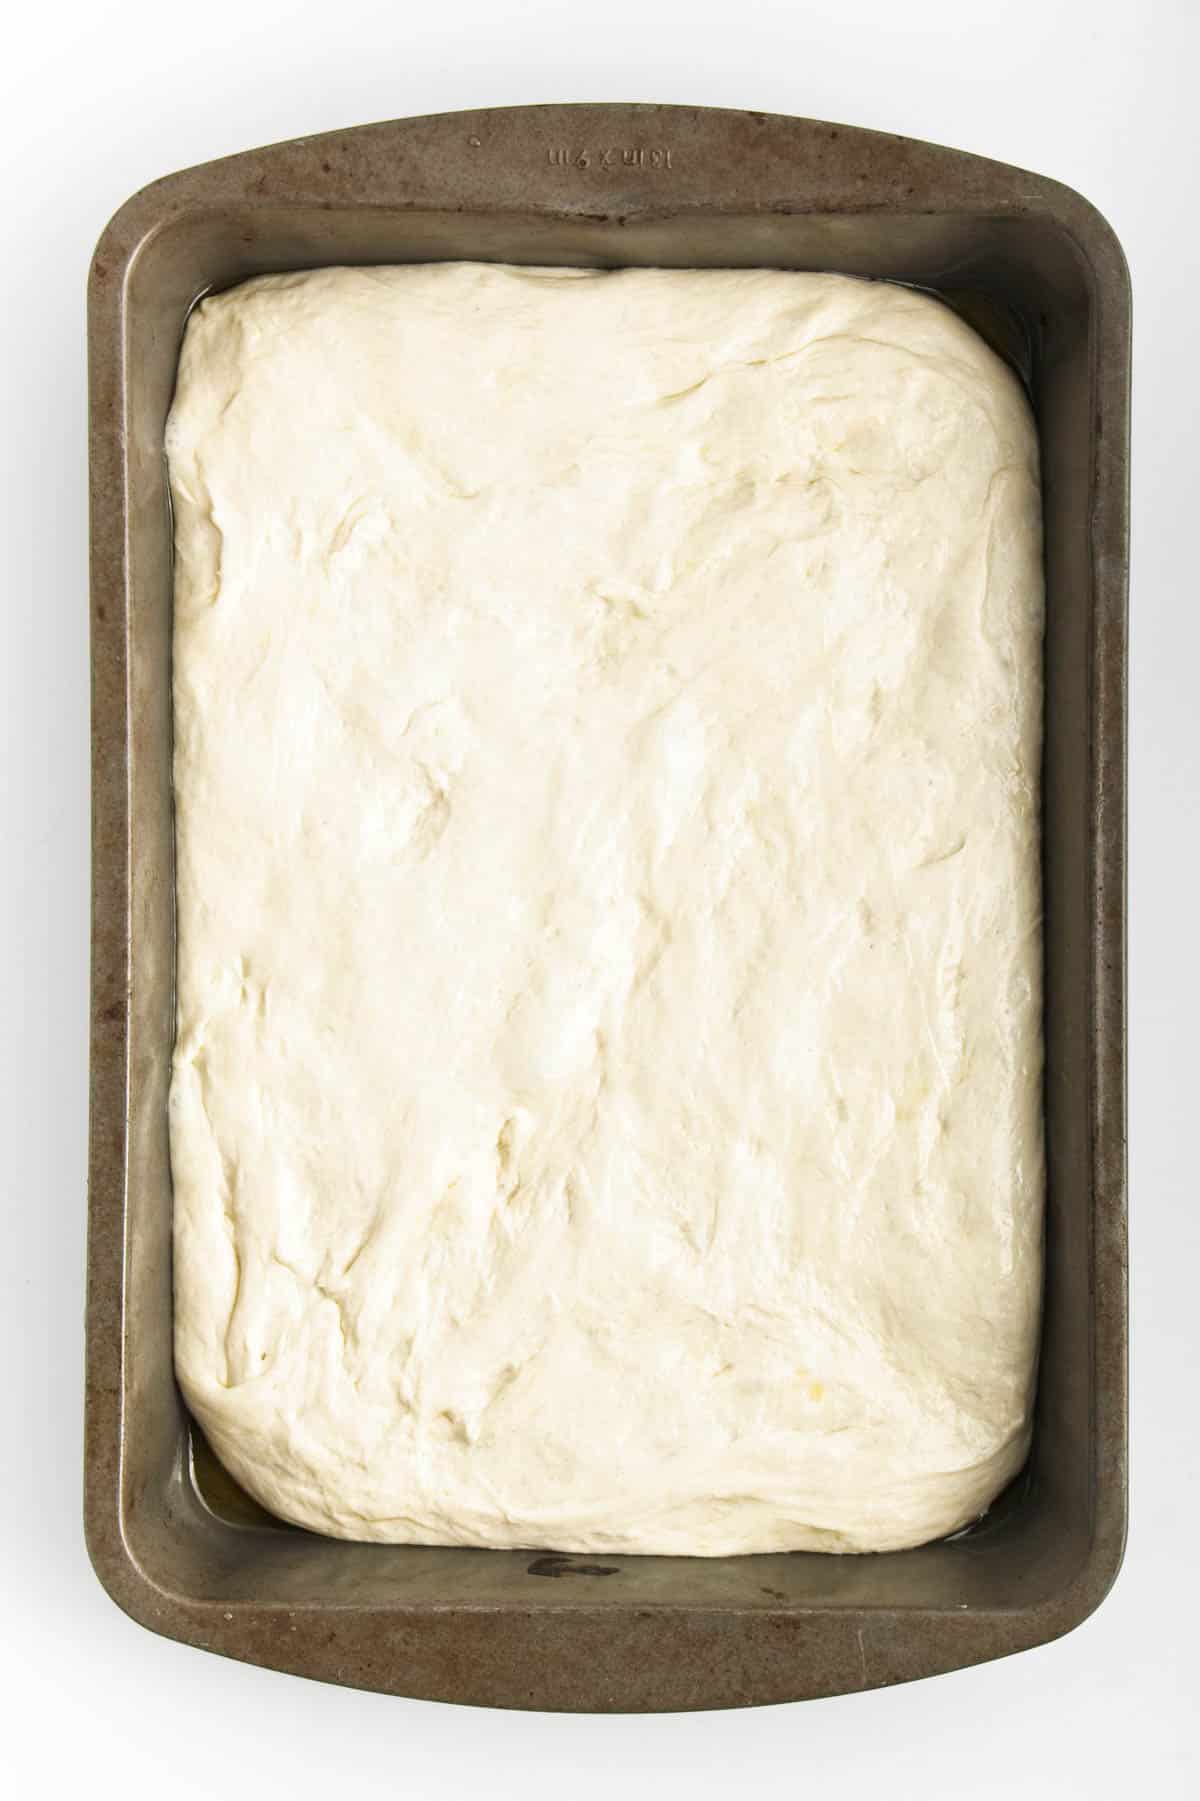 Dough spread in a baking pan.